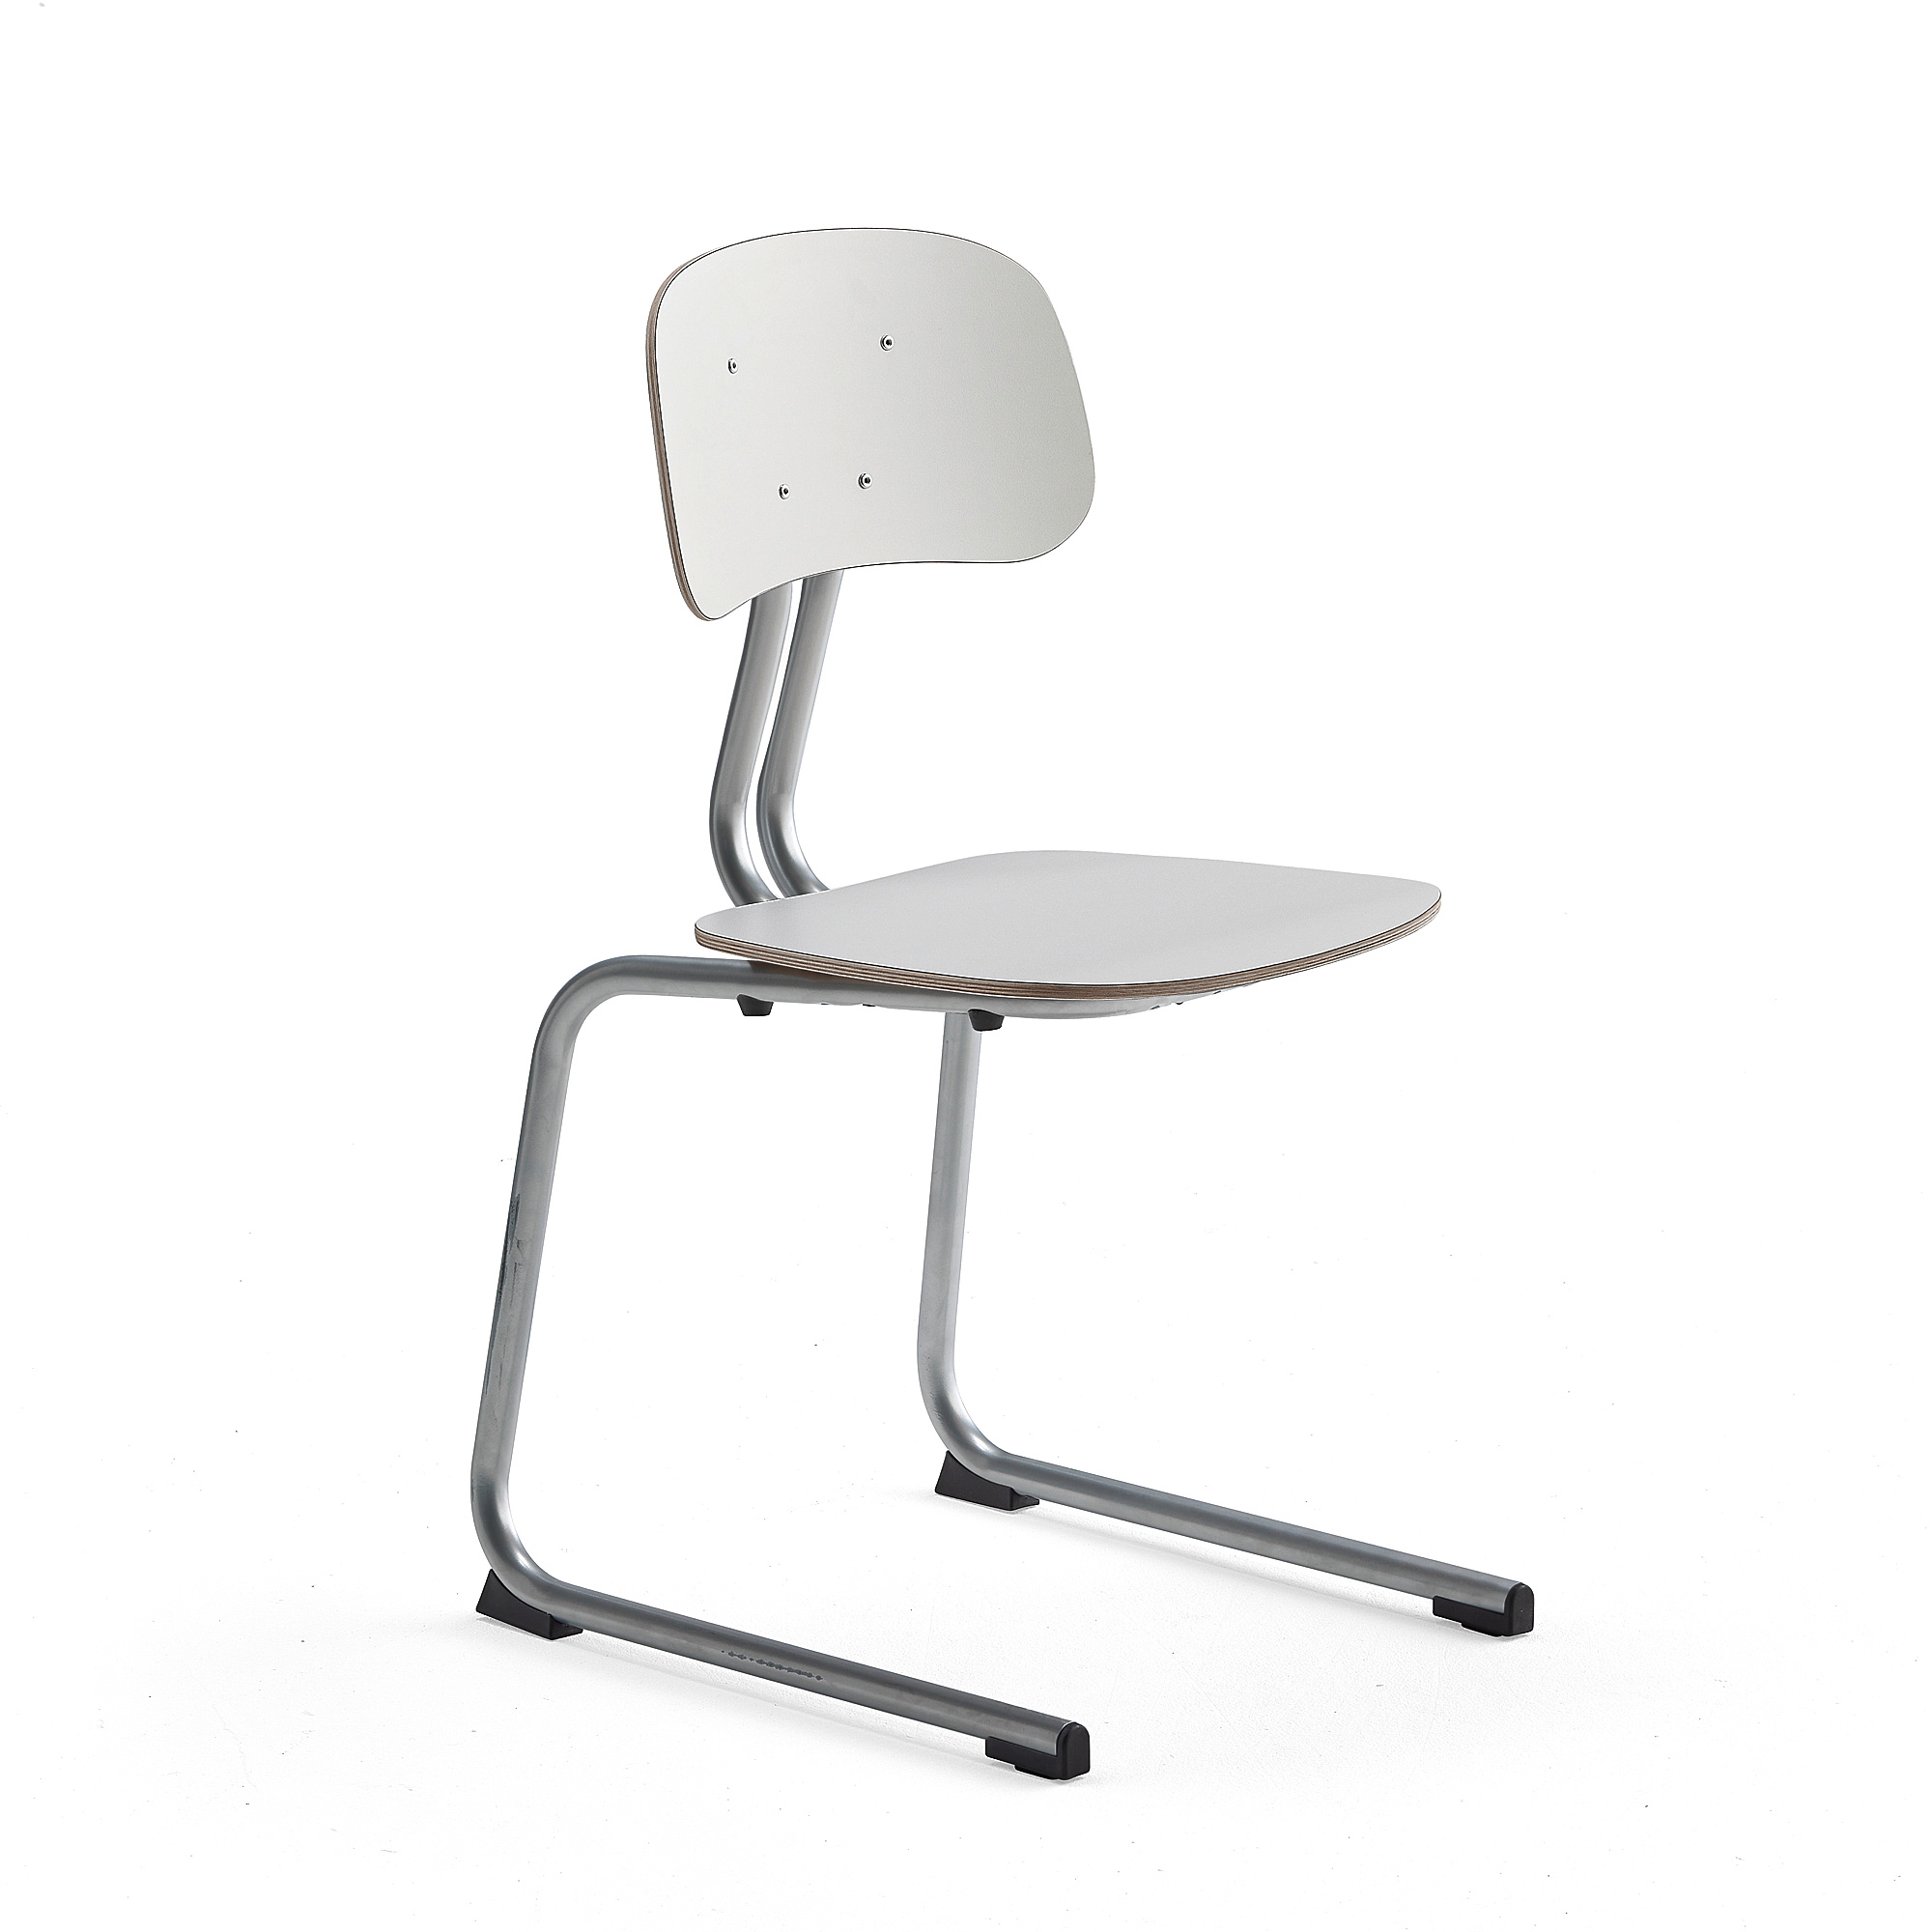 Školní židle YNGVE, ližinová podnož, výška 460 mm, stříbrná/bílá